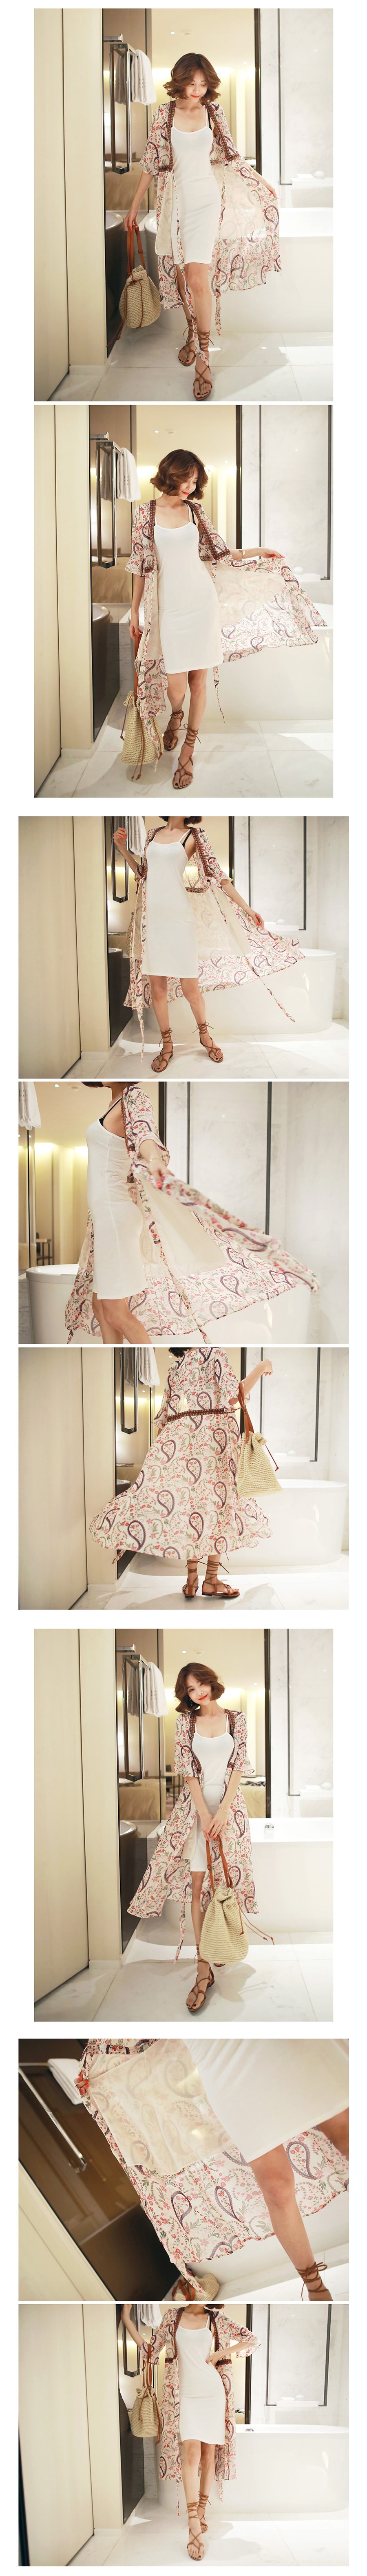 韩国正品 MAGZERO 涡纹花图案波西米亚风裹身裙 #乳白色 One Size(S-M) [免费配送]